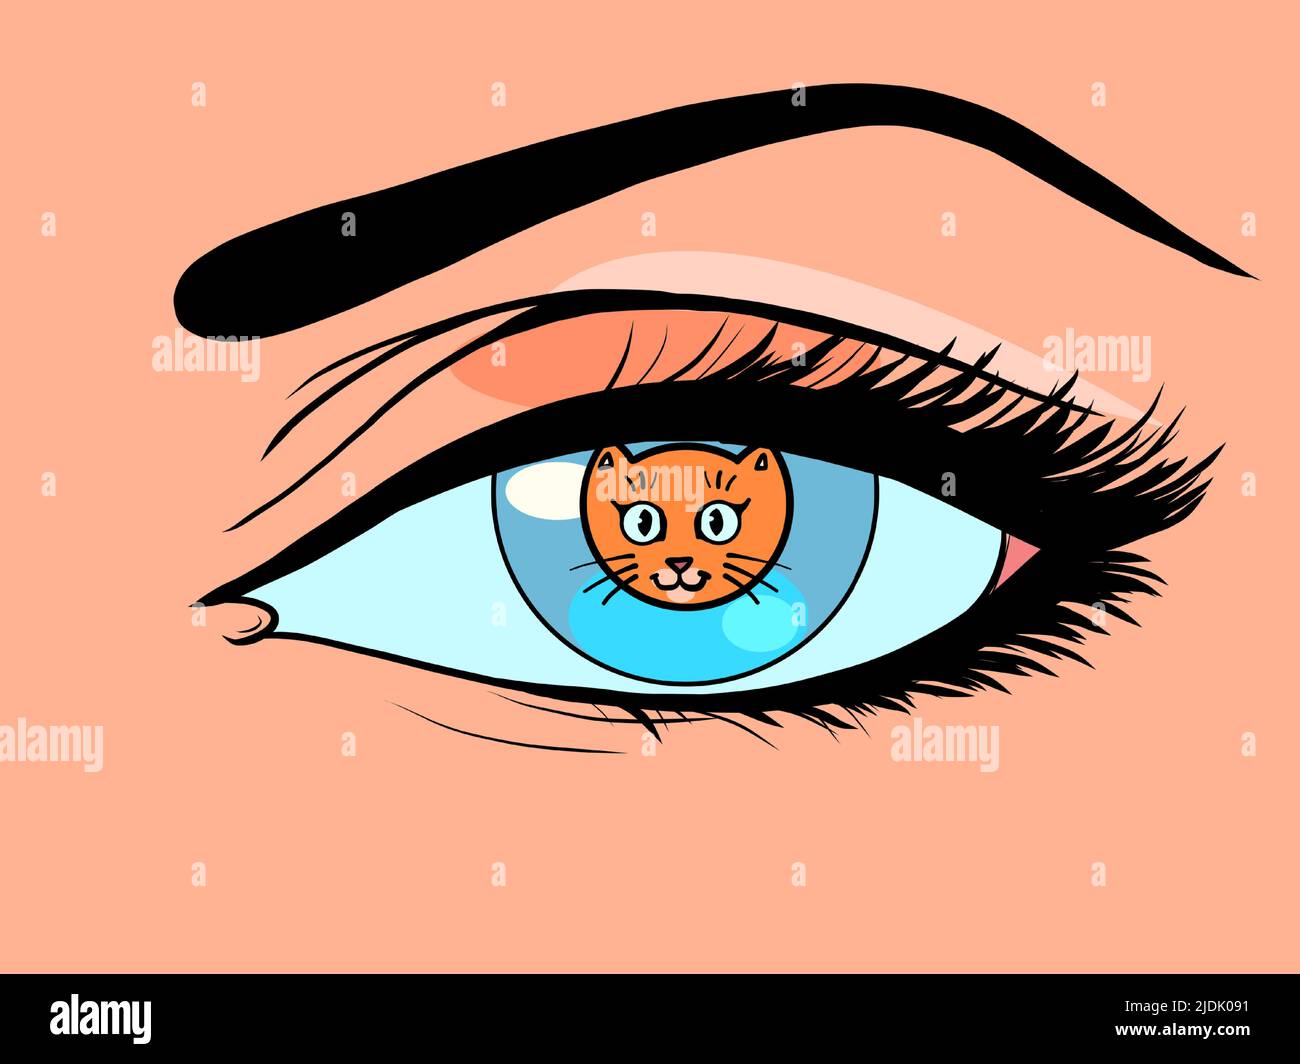 gato gatito animal doméstico en lugar de un alumno en un ojo de mujer. Ilustración de dibujo de estilo cómic Ilustración del Vector